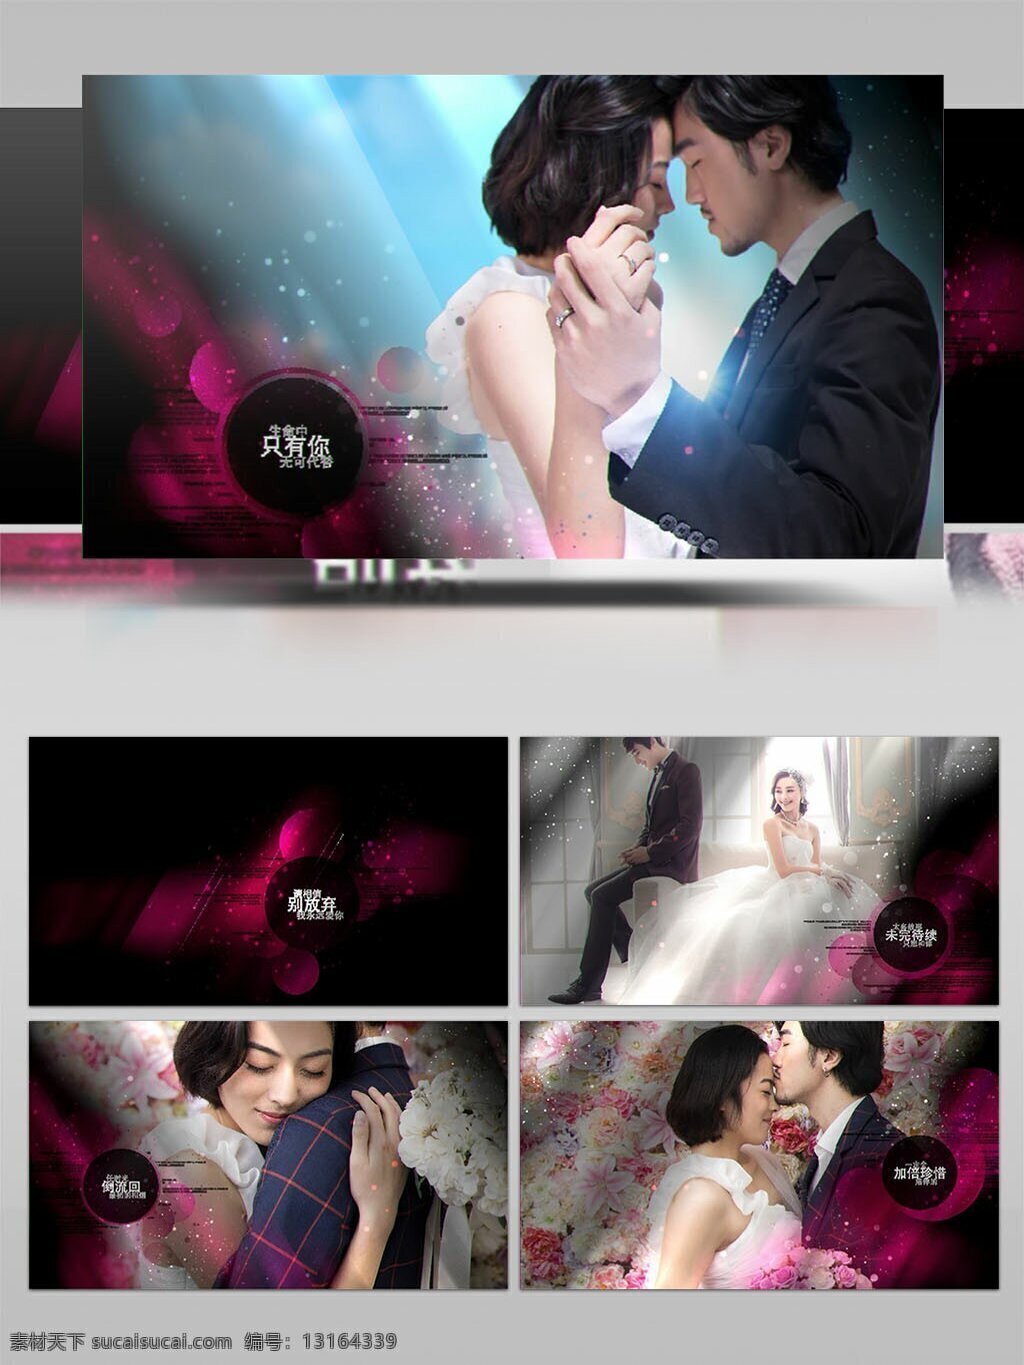 梦幻 紫色 粒子 装饰 婚礼 图像 展示 ae 模板 爱情 浪漫 甜蜜 图文展示